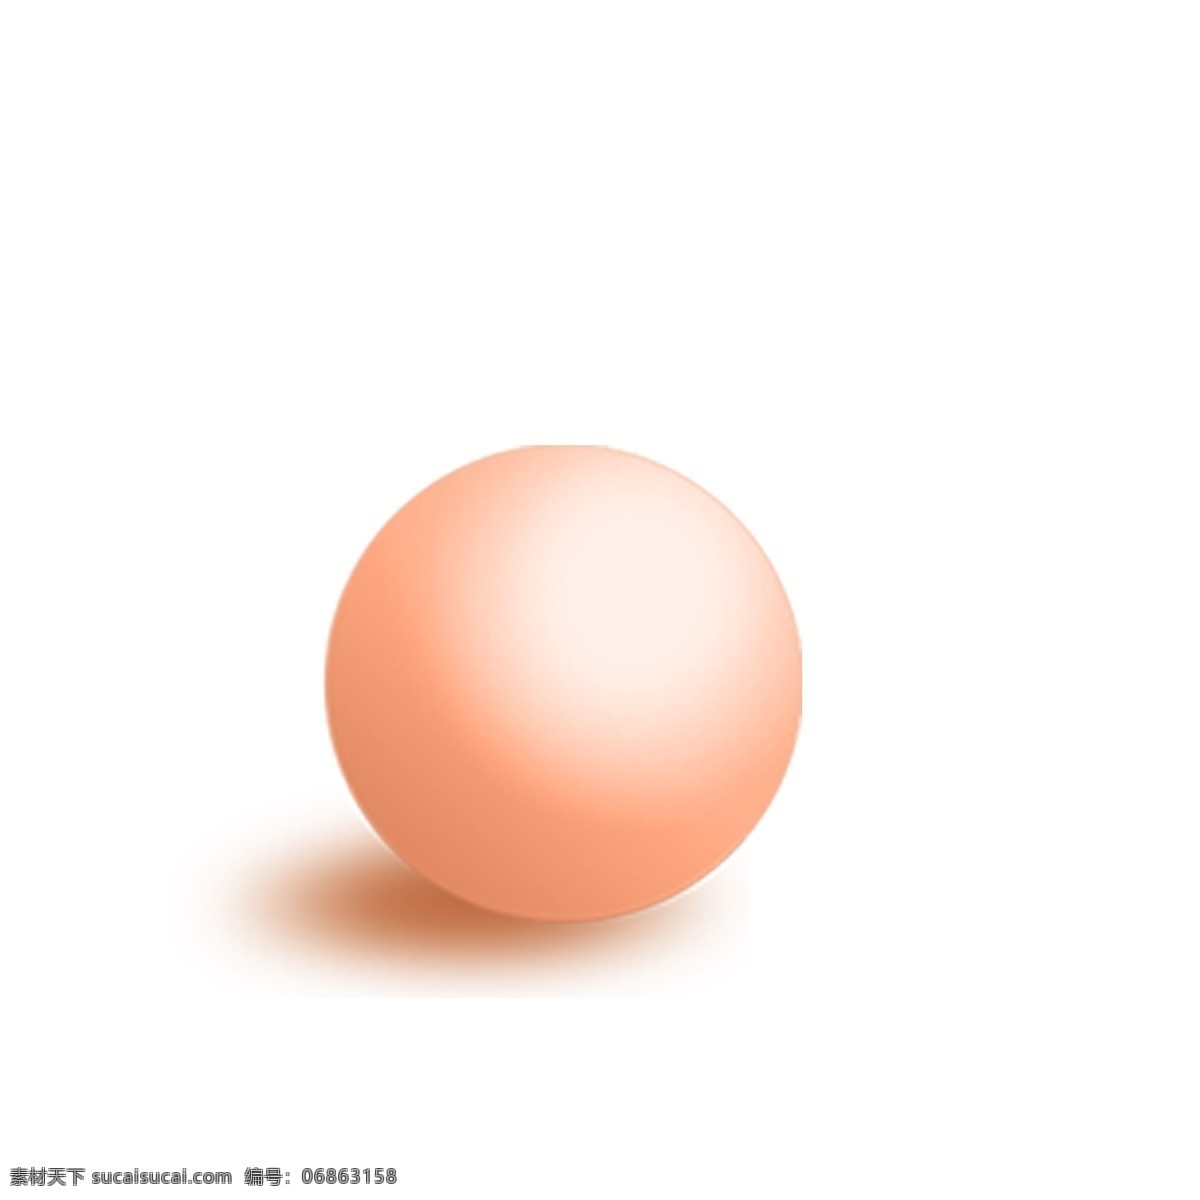 红色 圆球 免 抠 图 卡通图案 卡通插画 时尚插画 圆圆的球 3d立体球 红色的圆球 免抠图